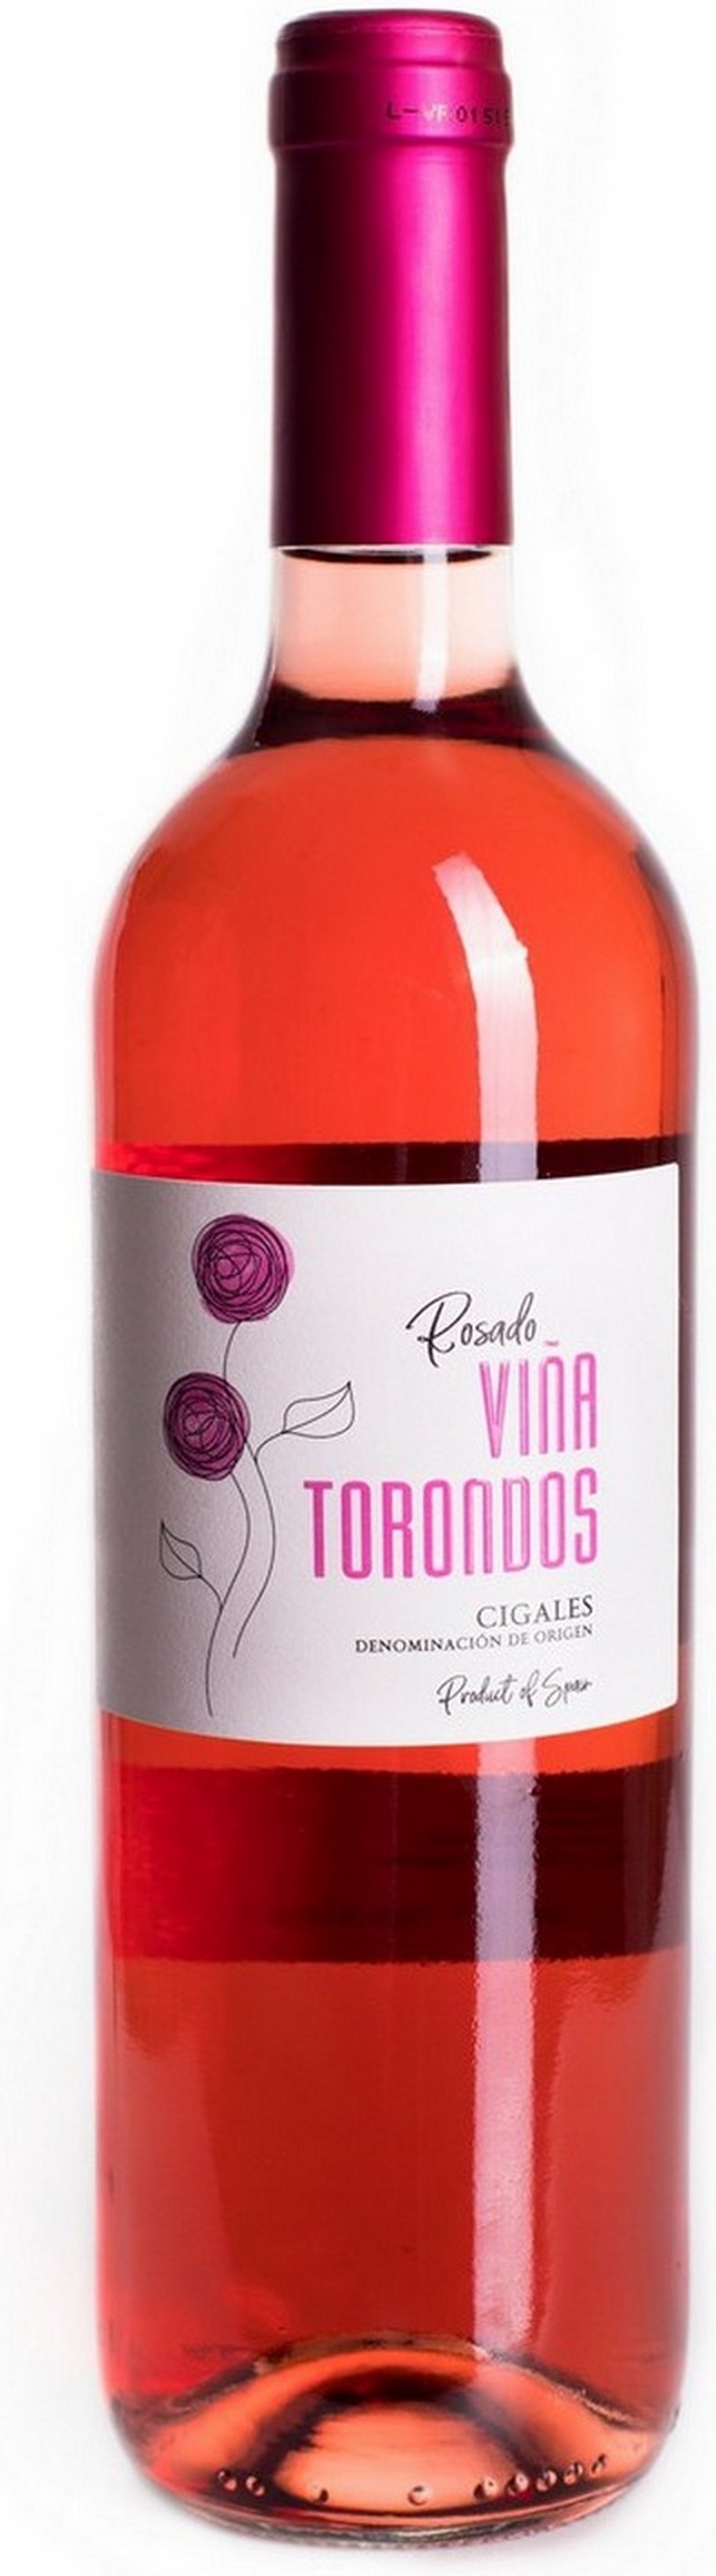 vinatorondos-rosado-seleccion-2019